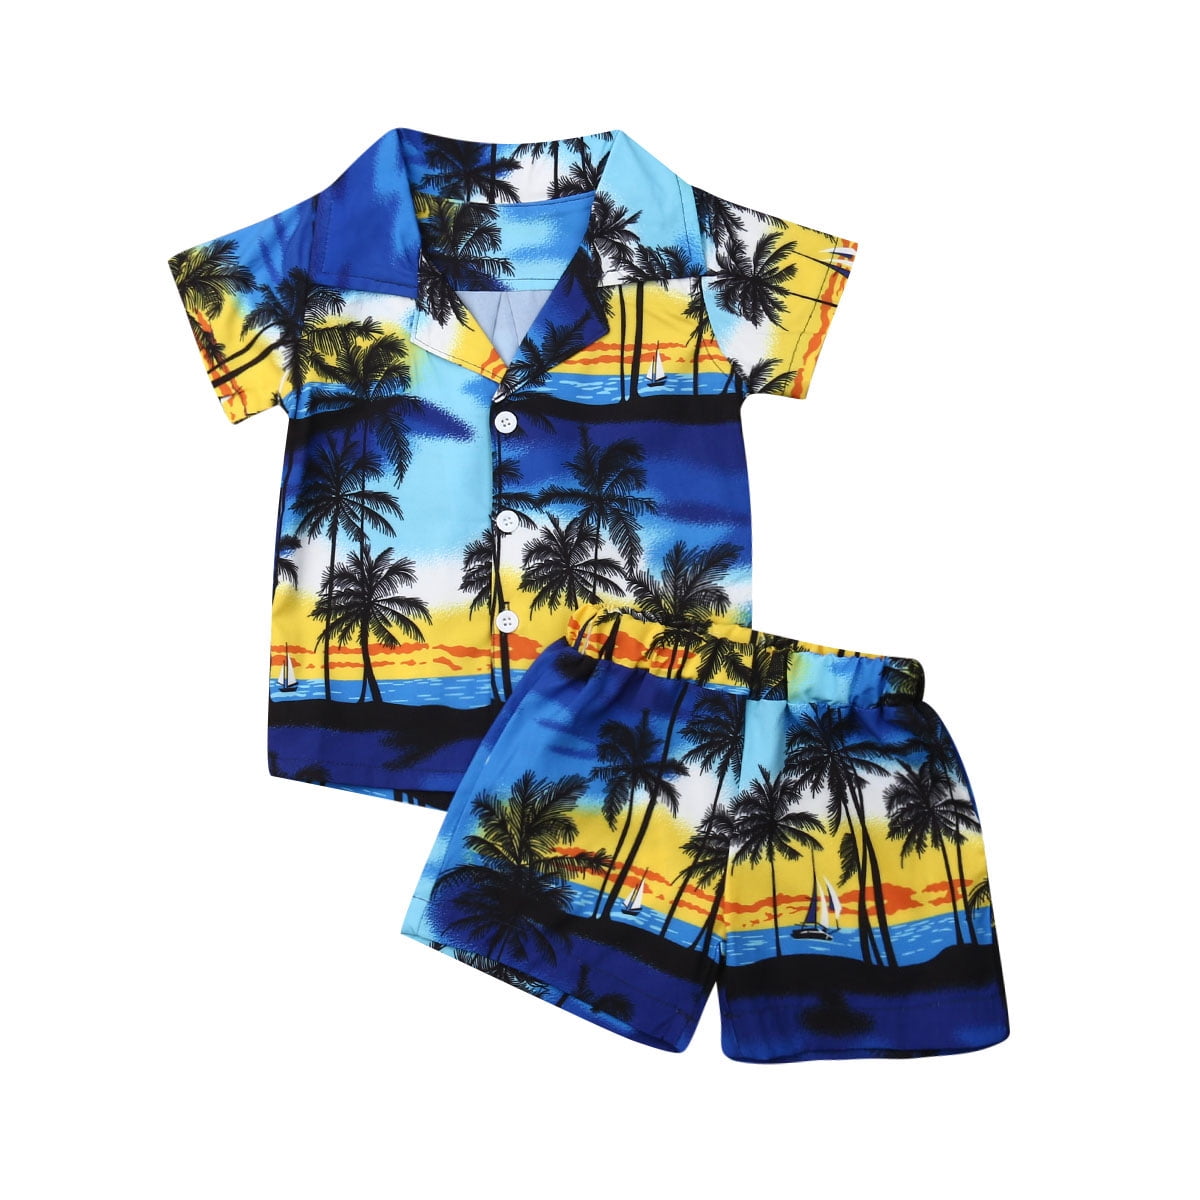 Boccsty Baseball Player Boy Summer Shorts Sets Hawaiian Toddler